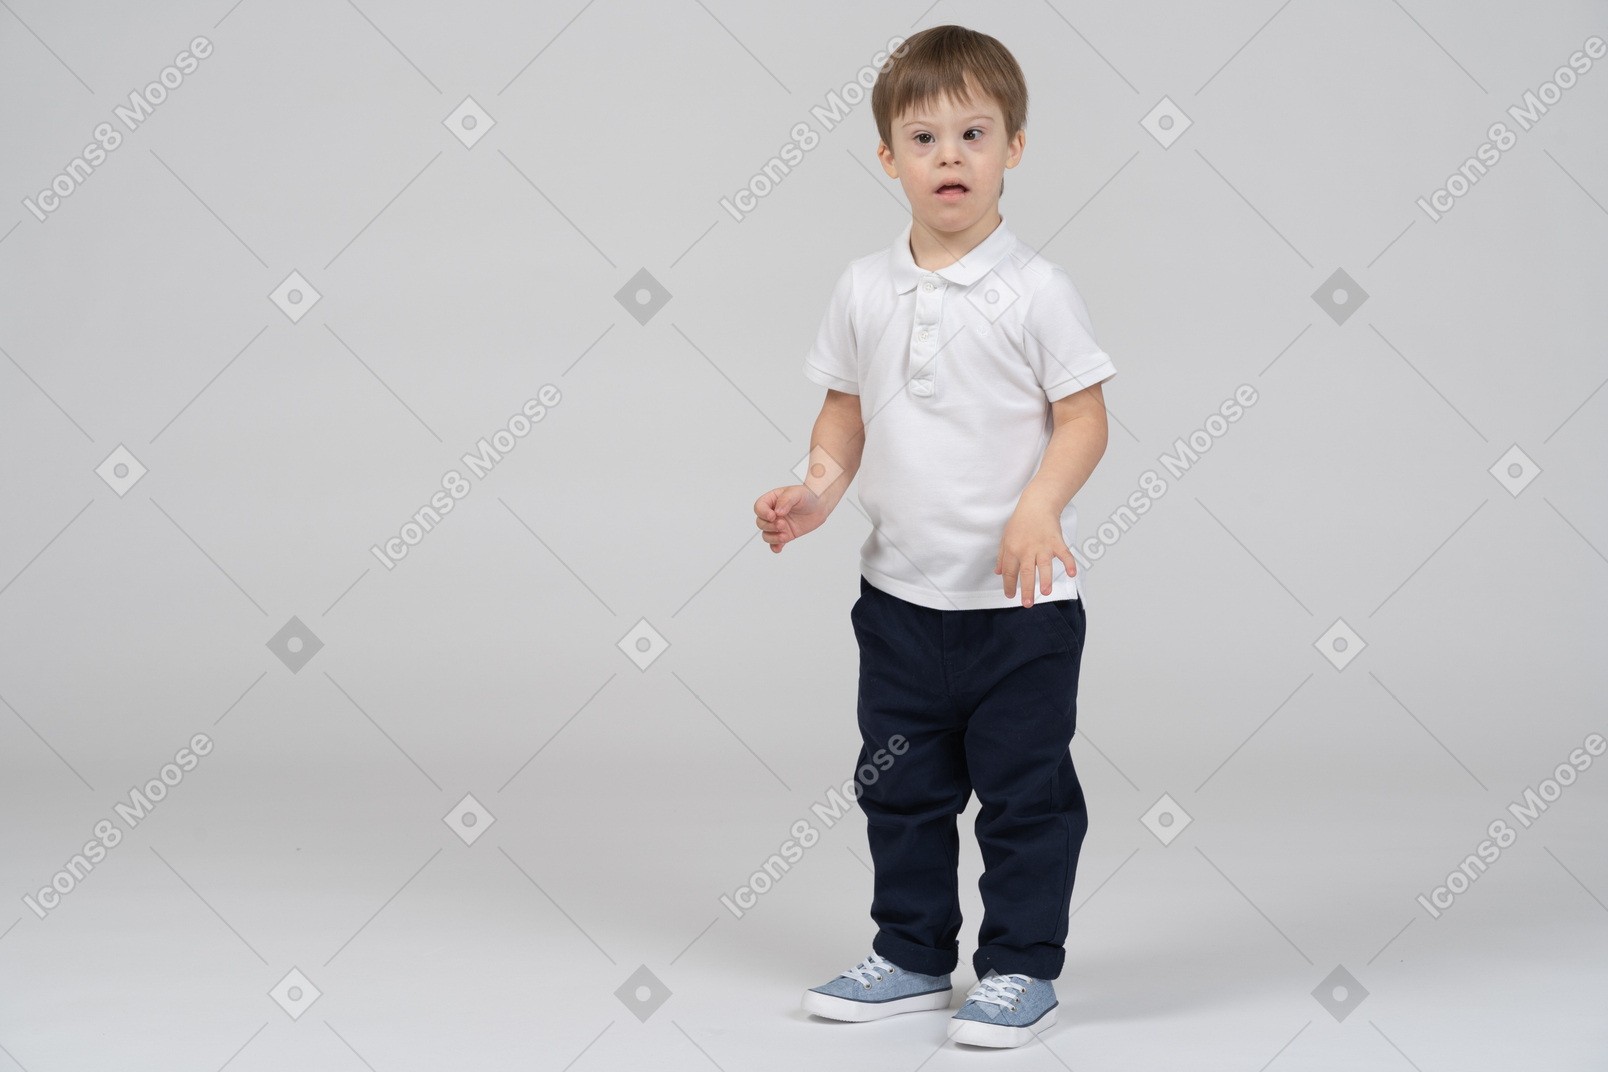 Vista de tres cuartos de un niño de pie sorprendido